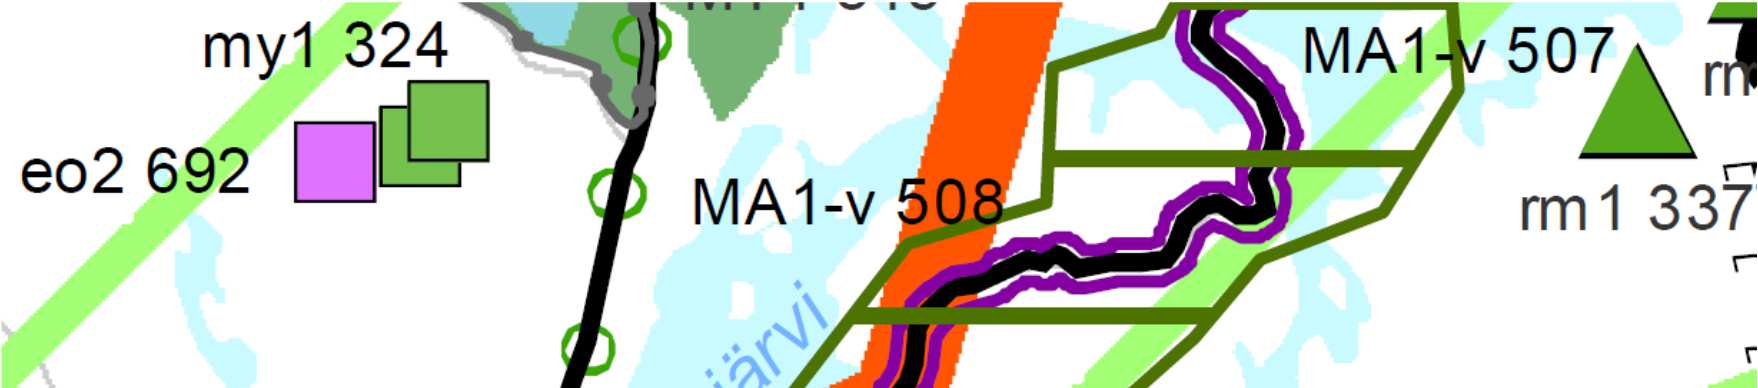 RAUTALAMPI Hännilän ranta-asemakaava Maankäytönsuunnittelu KUVA 3: Ote Pohjois-Savon maakuntakaavojen yhdistelmästä Pohjakartta Pohjakarttana käytetään maanmittauslaitoksen maastotieto- ja